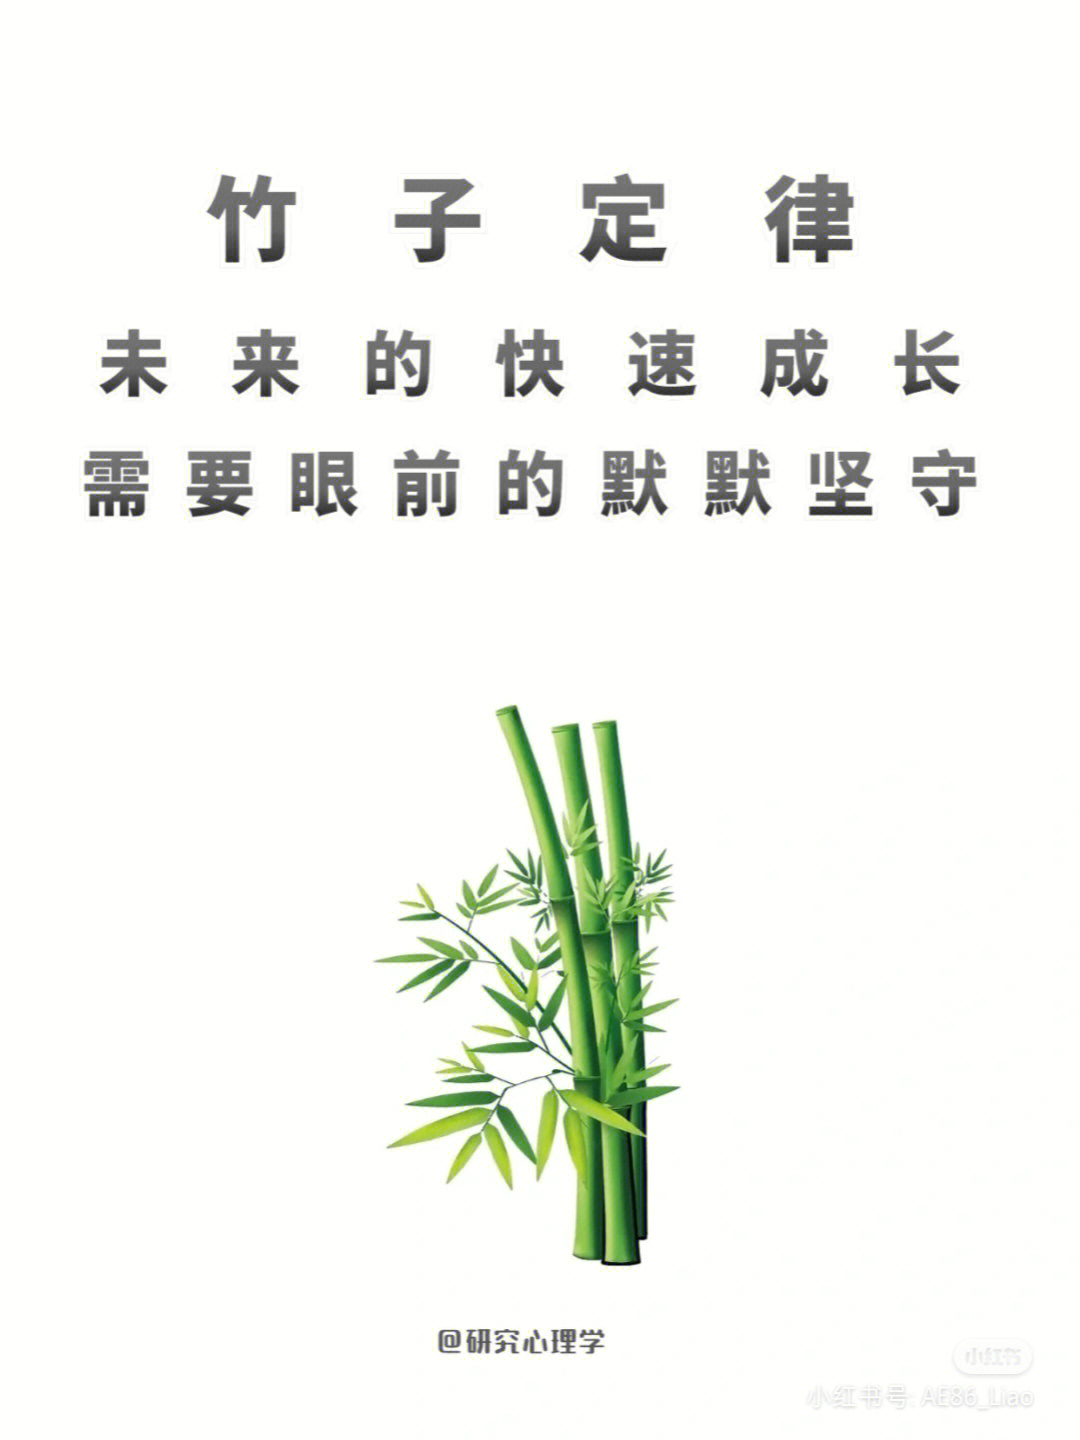 竹子定律未来的快速成长需要眼前的坚定